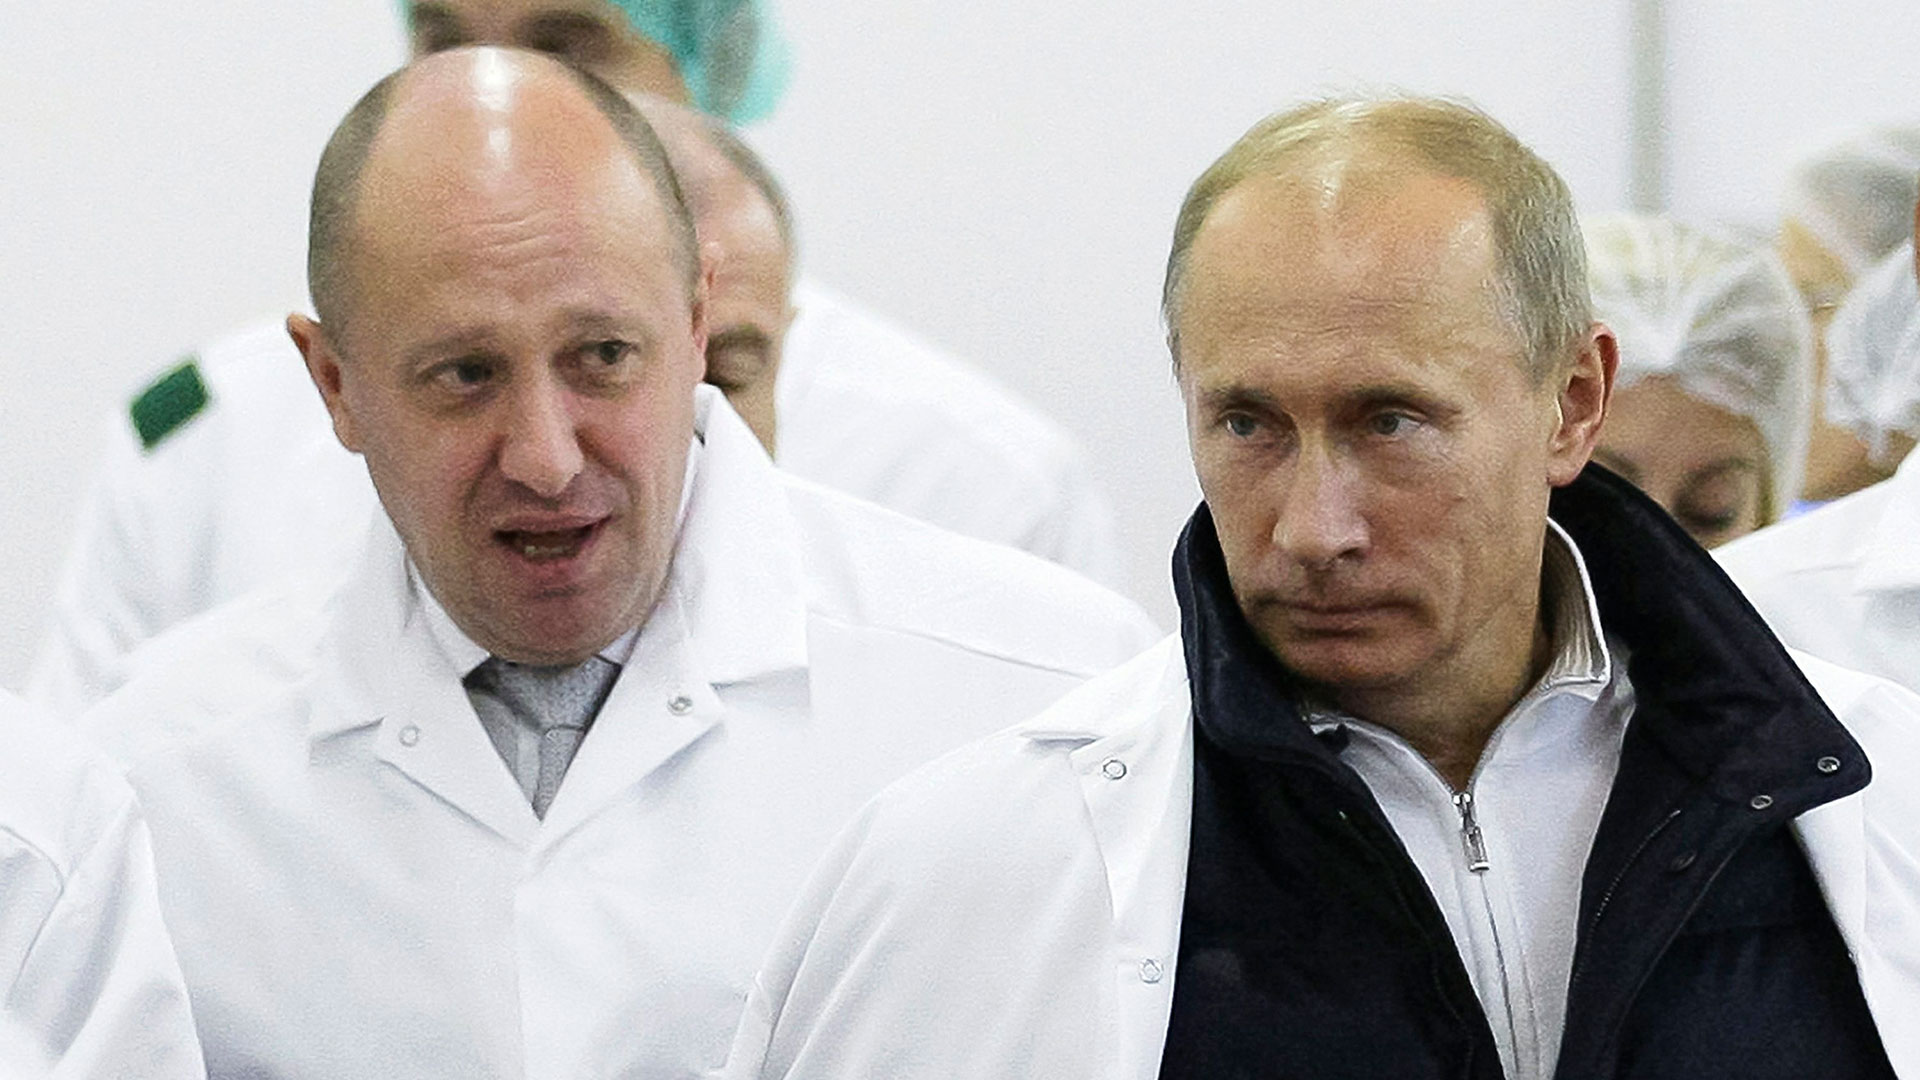 Imagen de rchivo del empresario Yevgeny Prigozhin y Vladimir Putin (AP)